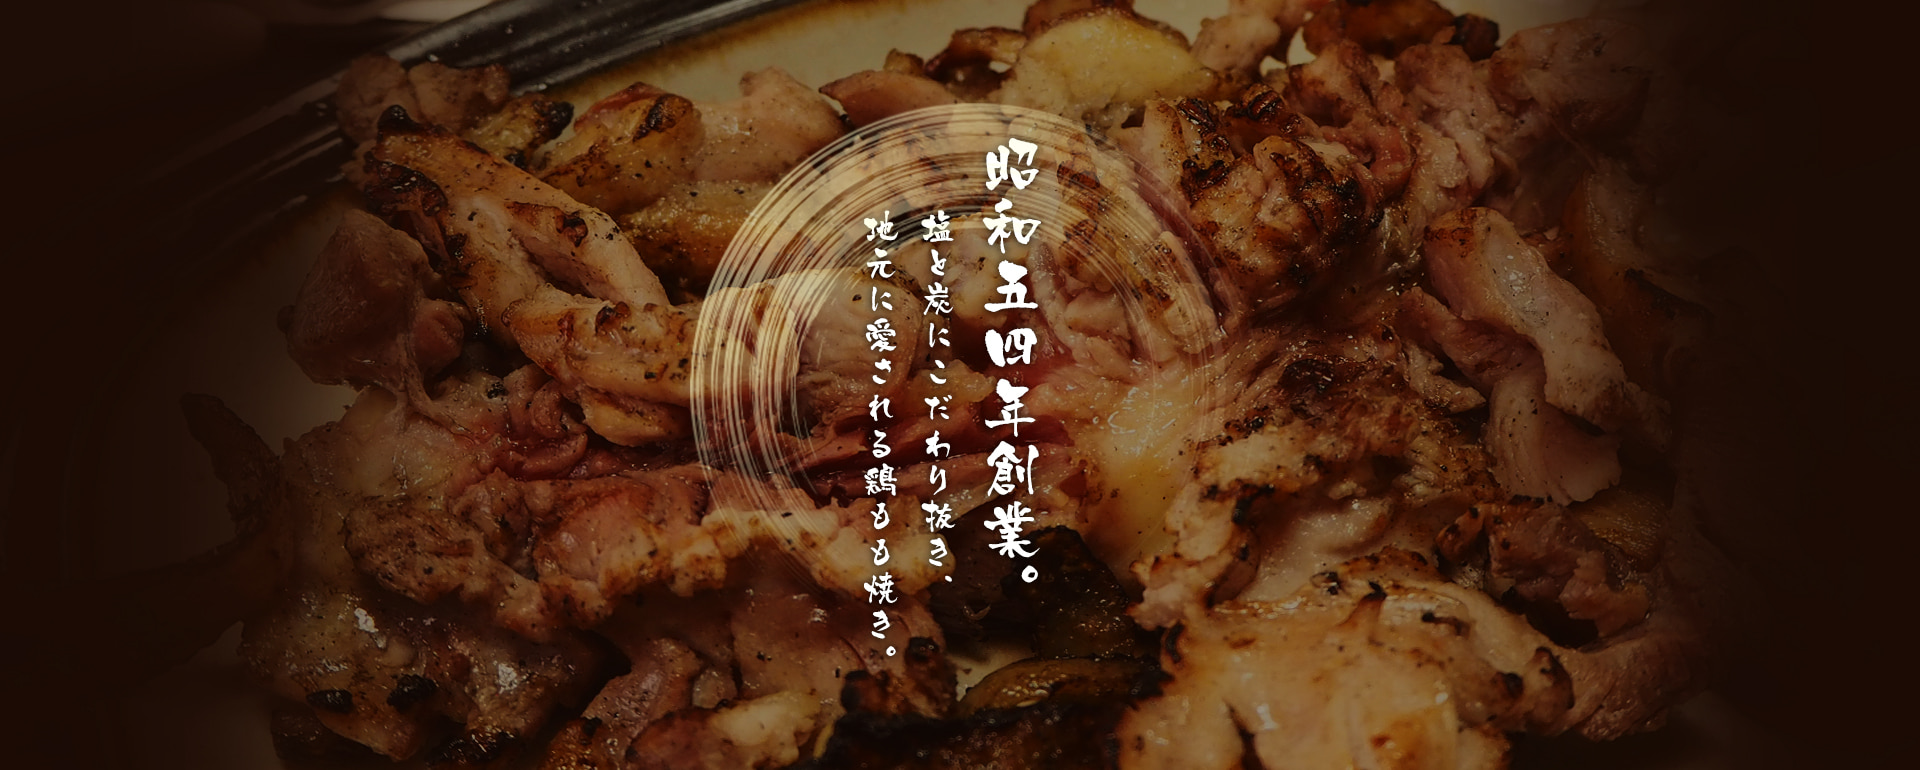 昭和五四年創業。塩と炭にこだわり抜き、地元に愛される鶏もも焼き。